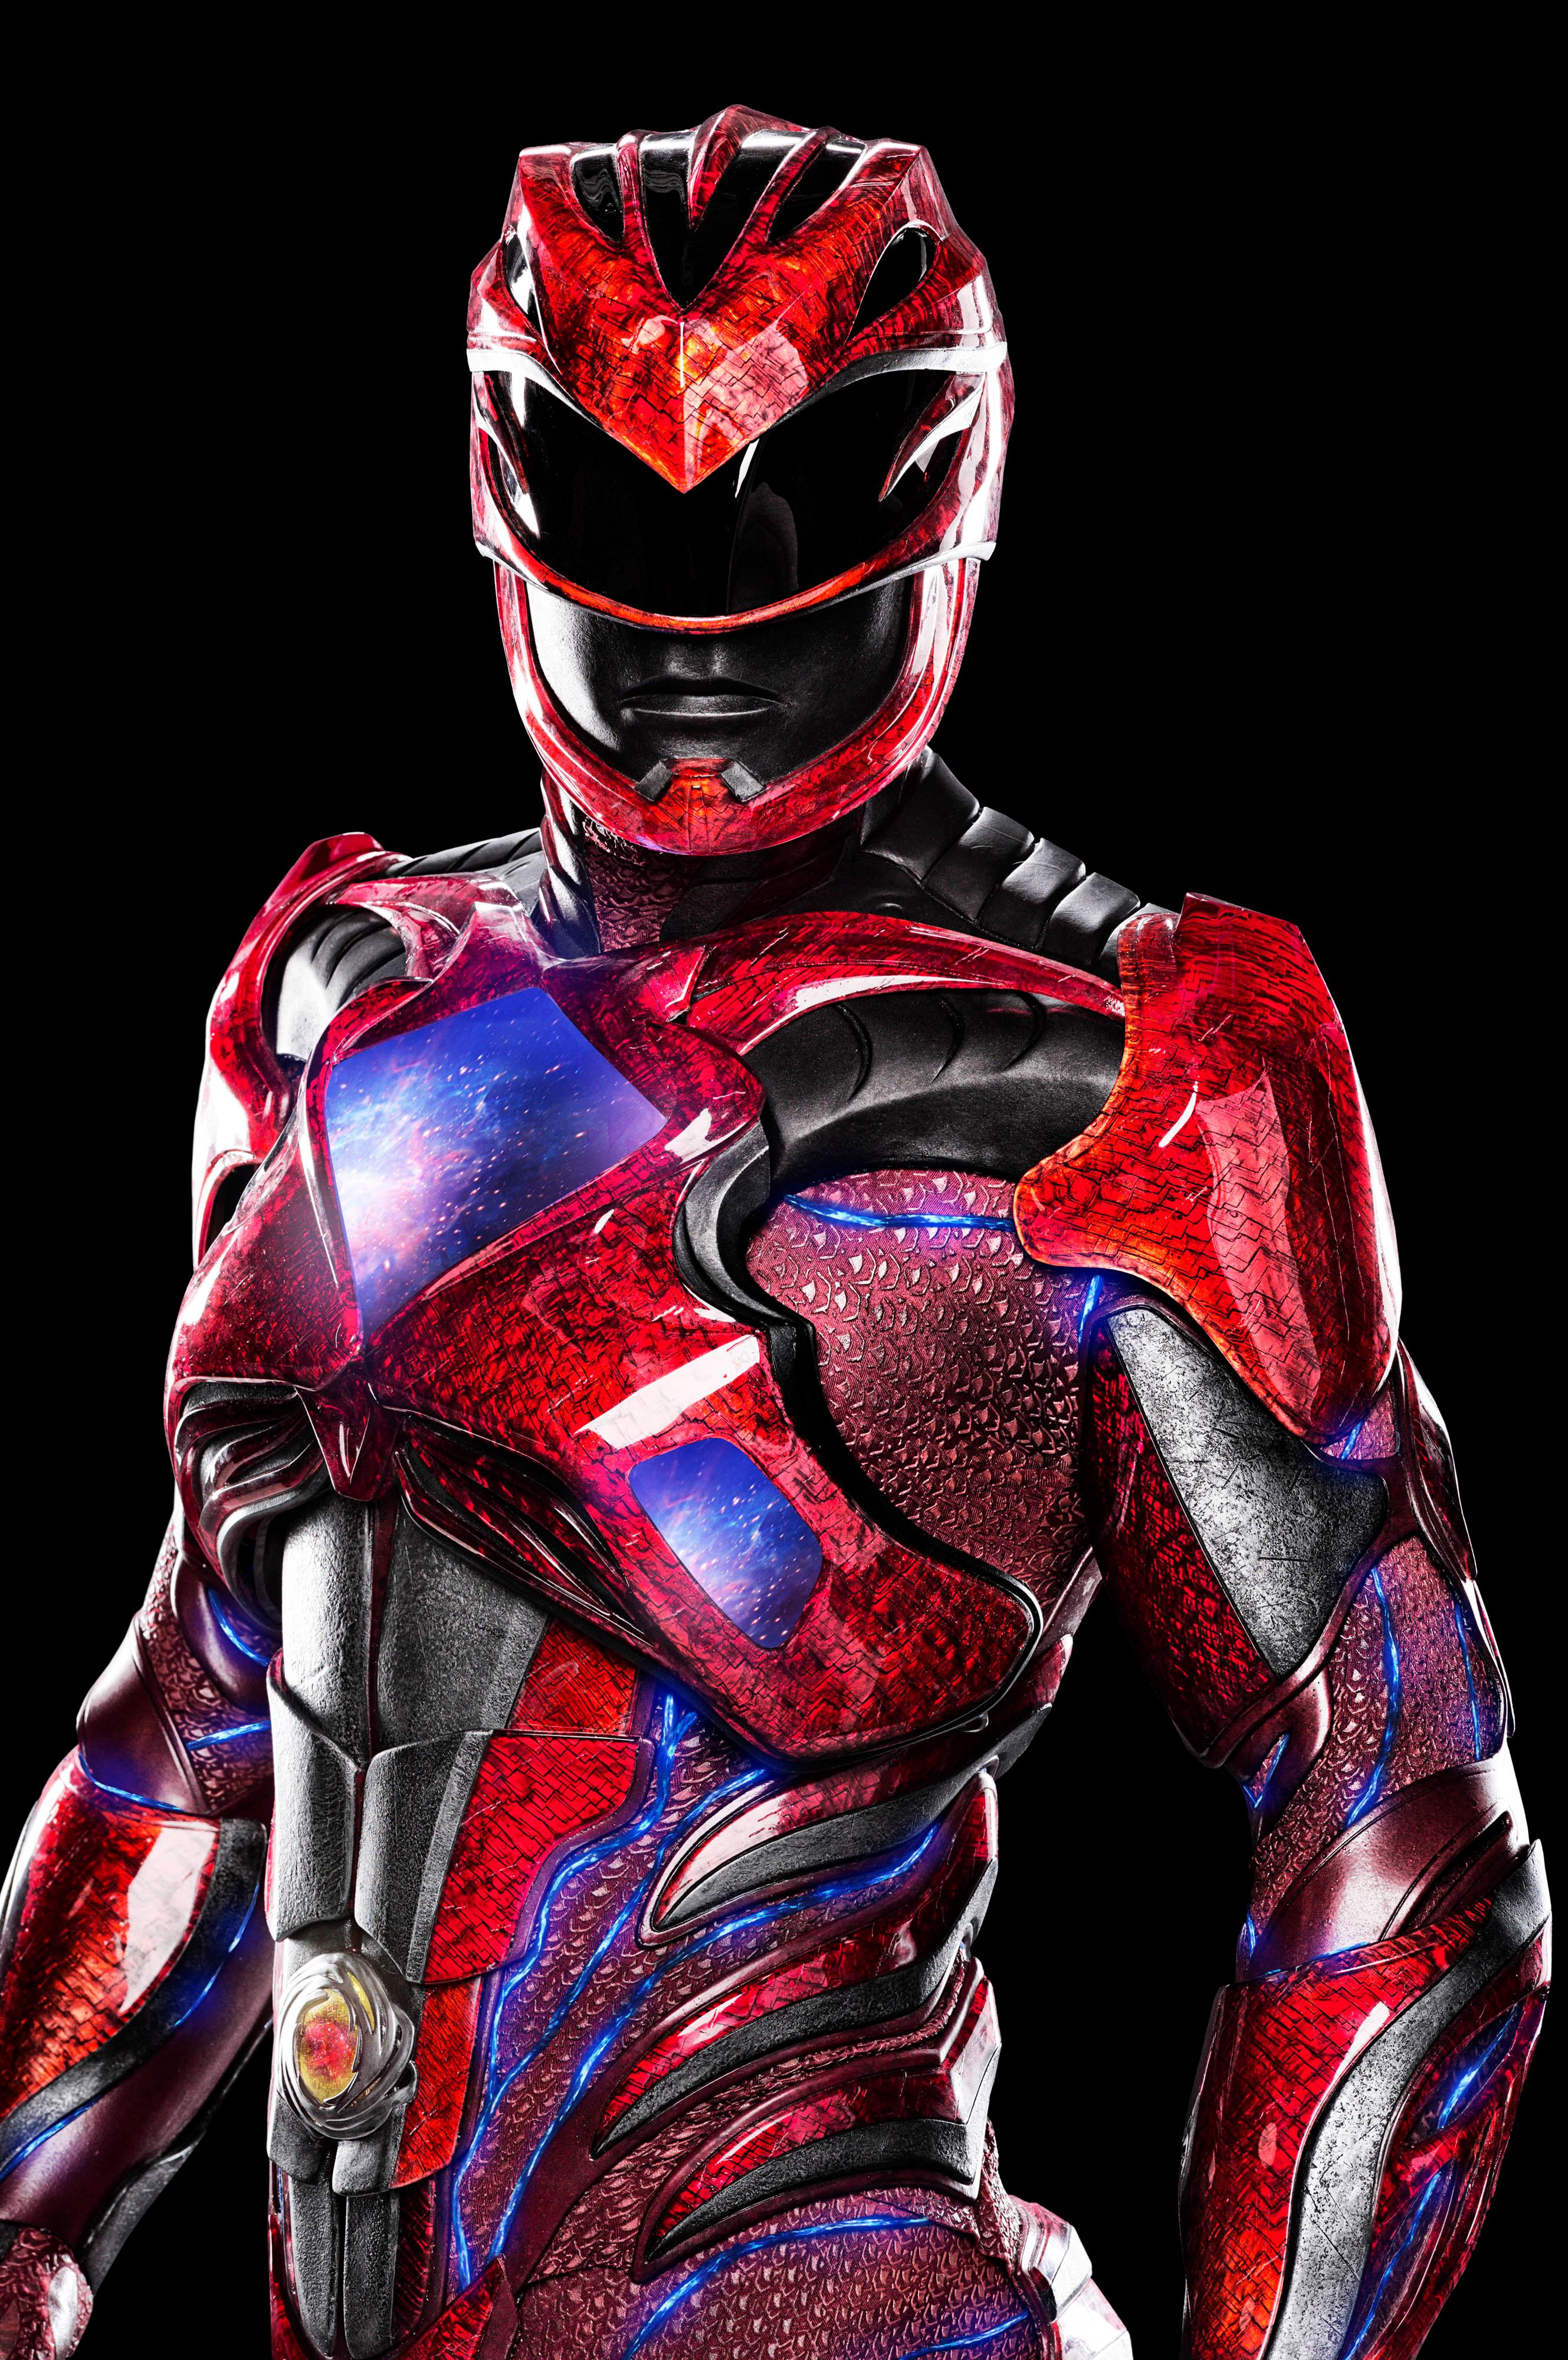 Wallpaper  Nebezial Power Rangers Red Ranger 3570x2187  olakase   1307481  HD Wallpapers  WallHere